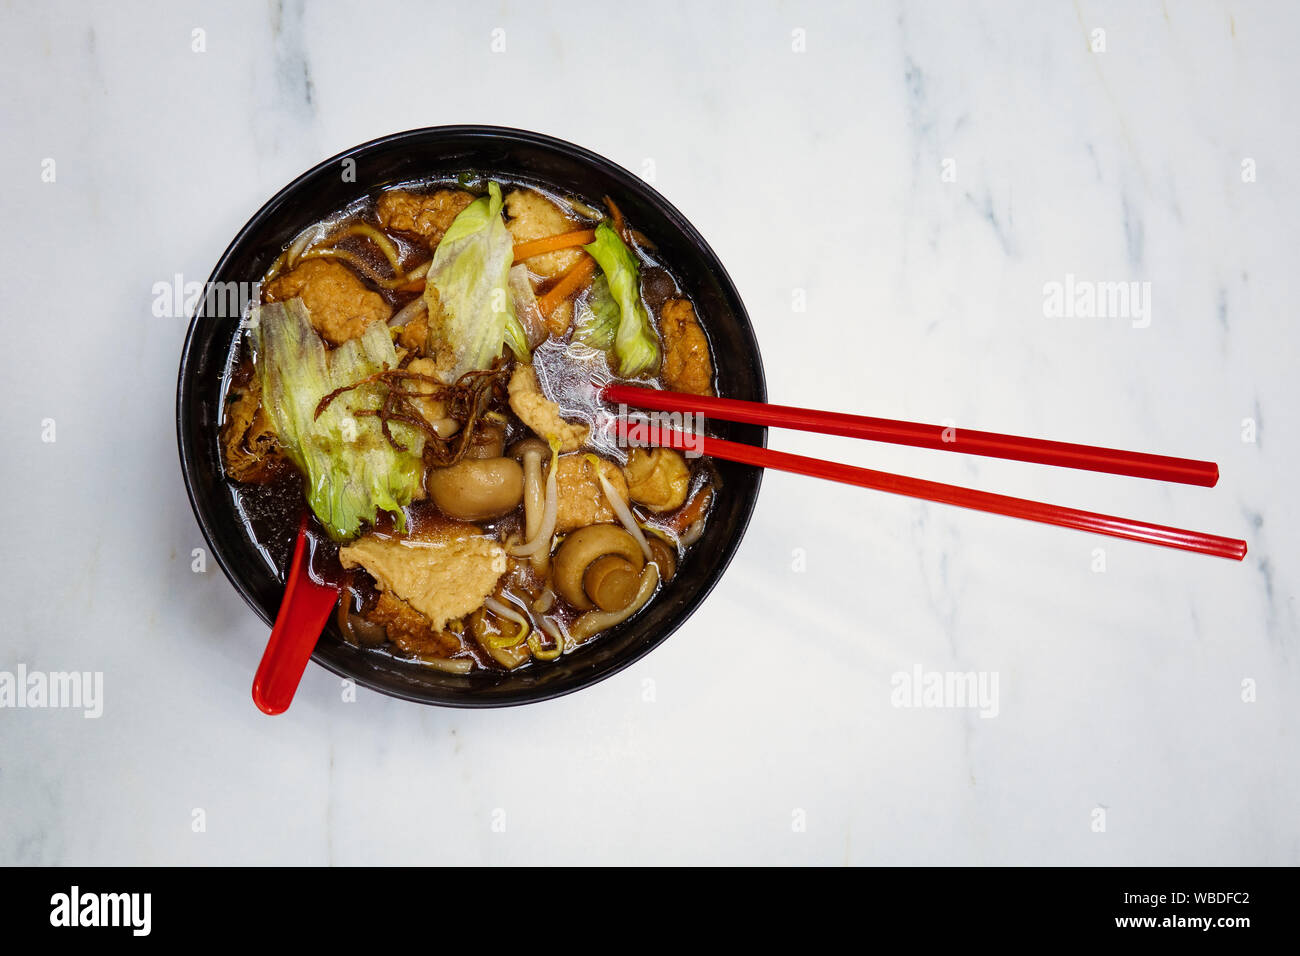 Un végétalien tofu aux champignons et nouilles asiatiques en soupe claire, servi dans un bol avec des baguettes noir rouge dans un restaurant à Singapour. Banque D'Images